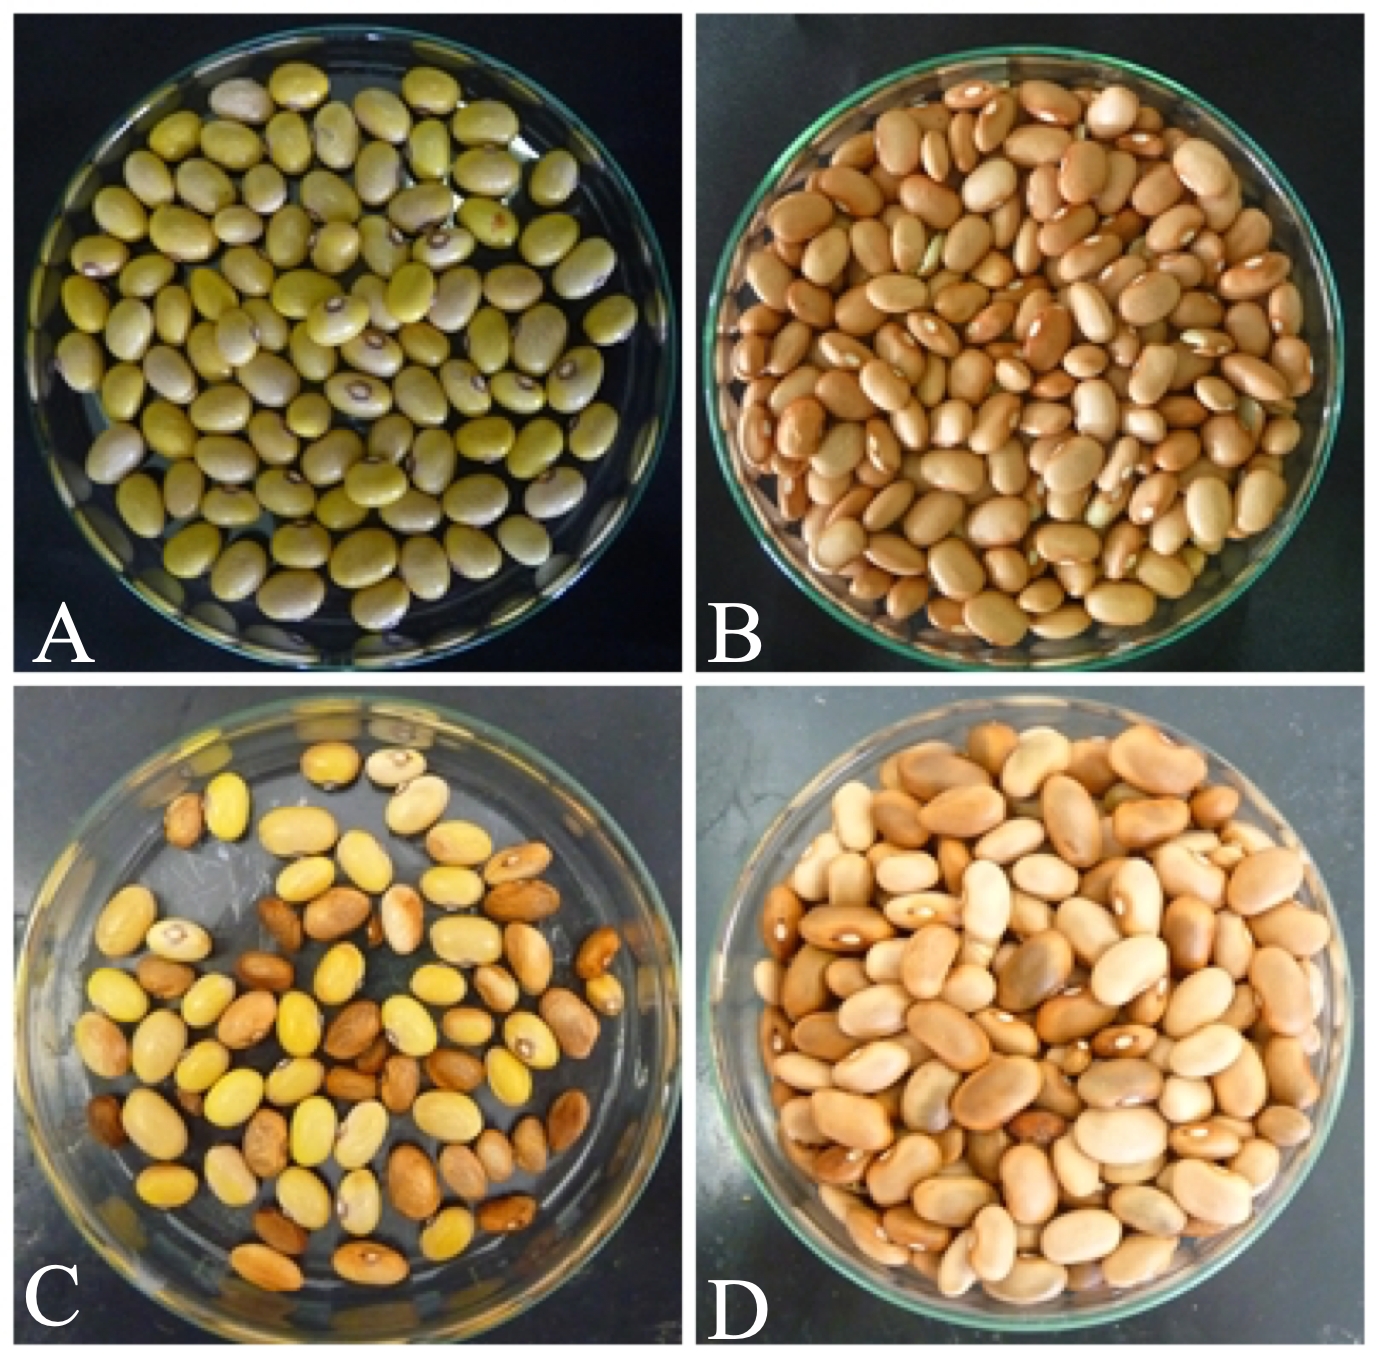 Sementes de feijão das cultivares Coquinho (Suscetível) e IPA 9 (Resistente) provenientes de plantas sadias(A e B) e contaminadas (C e D) com C. flaccumfaciens pv. flaccumfaciens